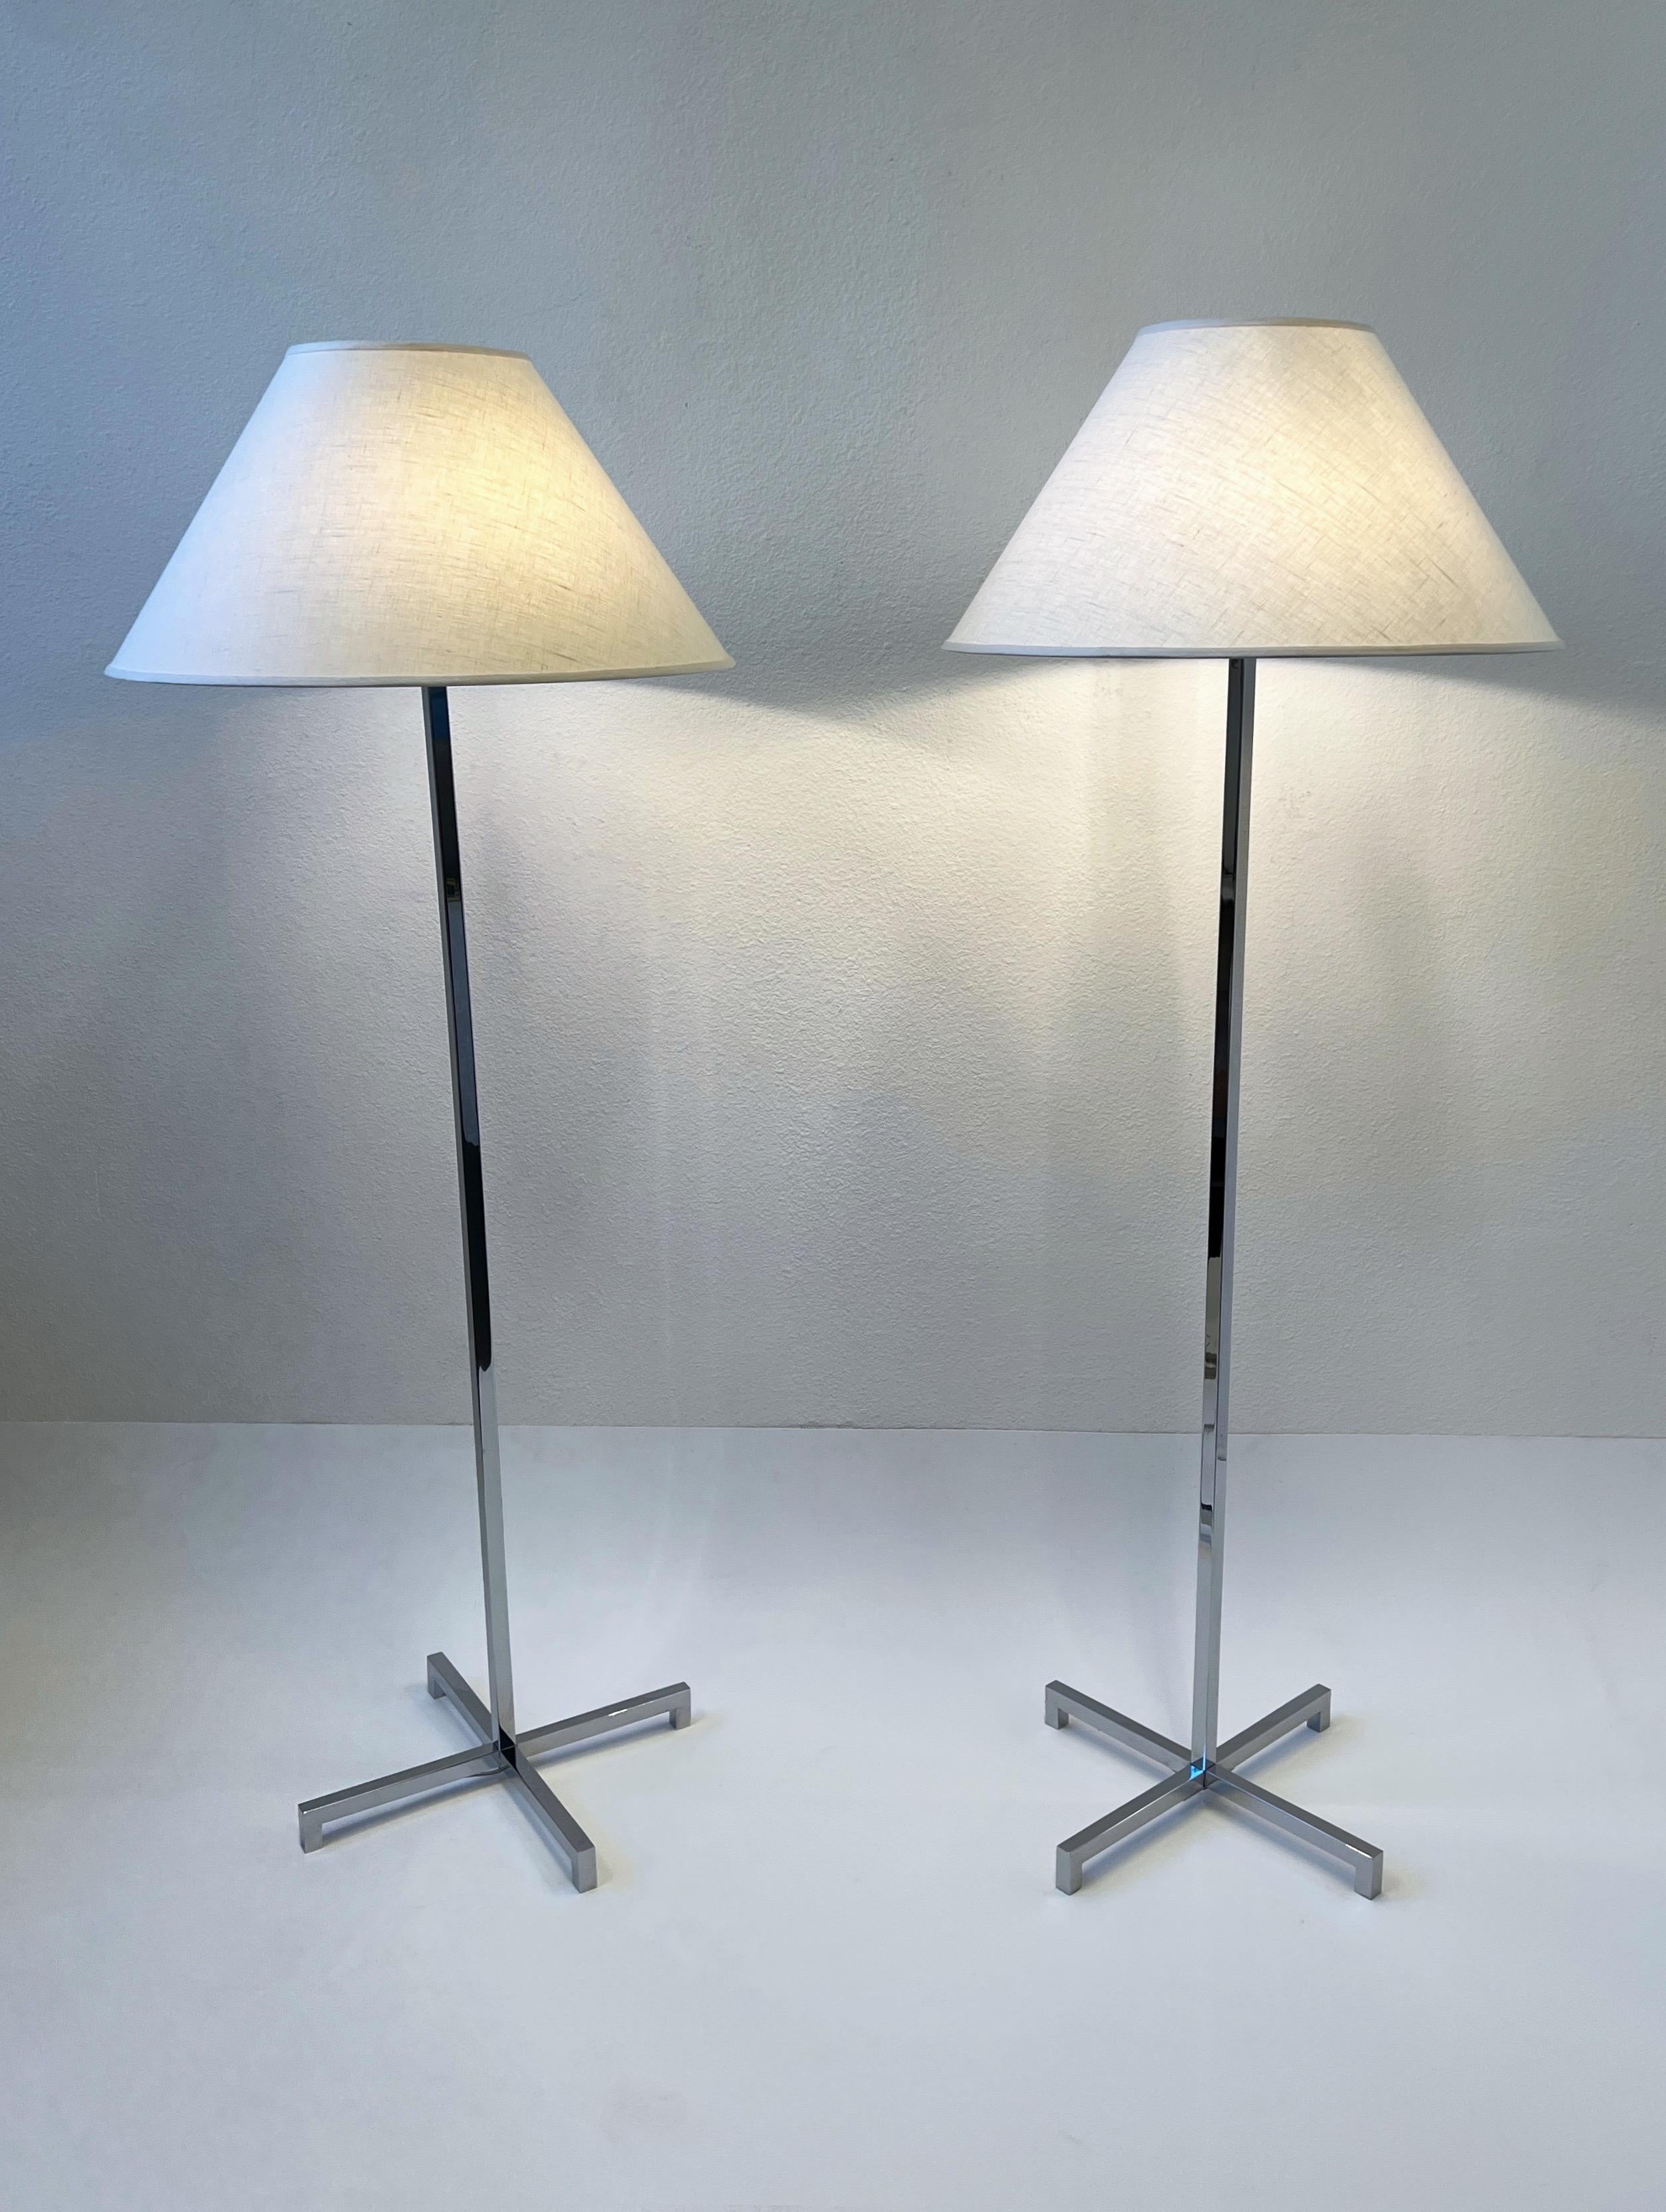 Glamouröses Paar Stehlampen aus poliertem Chrom des bekannten amerikanischen Designers T.H. Robsjohn Gibbings für Hansen Lighting Co.
Neu verkabelt und neue Vanille-Leinenschirme. 
In schönem Vintage-Zustand. 
Jede Leuchte ist für drei